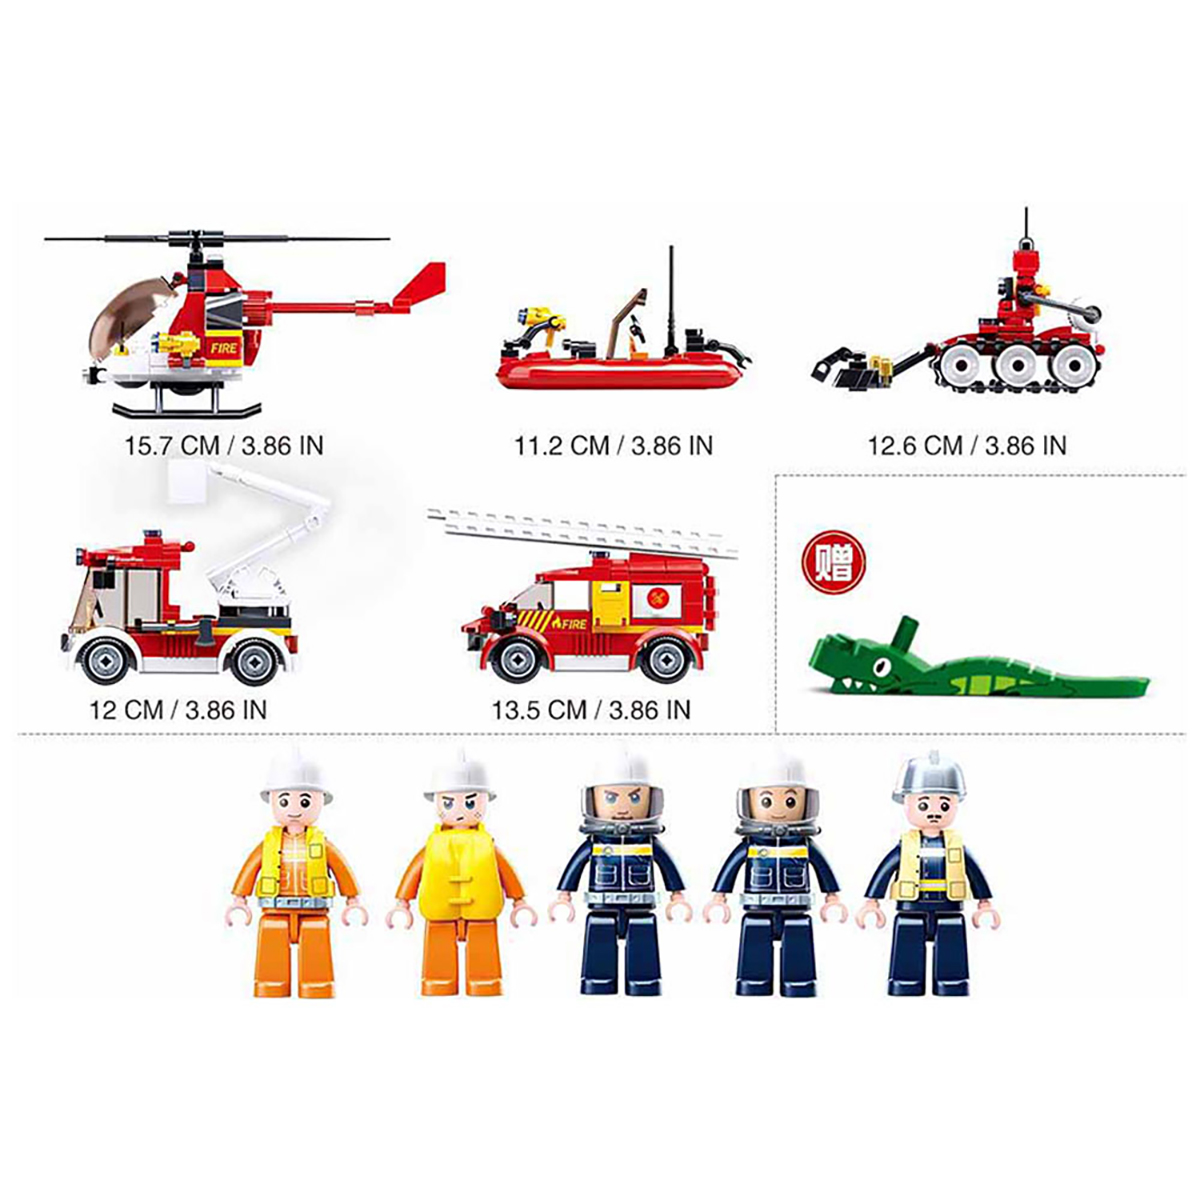 SLUBAN Feuerwehrfahrzeuge Set (488 Klemmbausteine Teile)